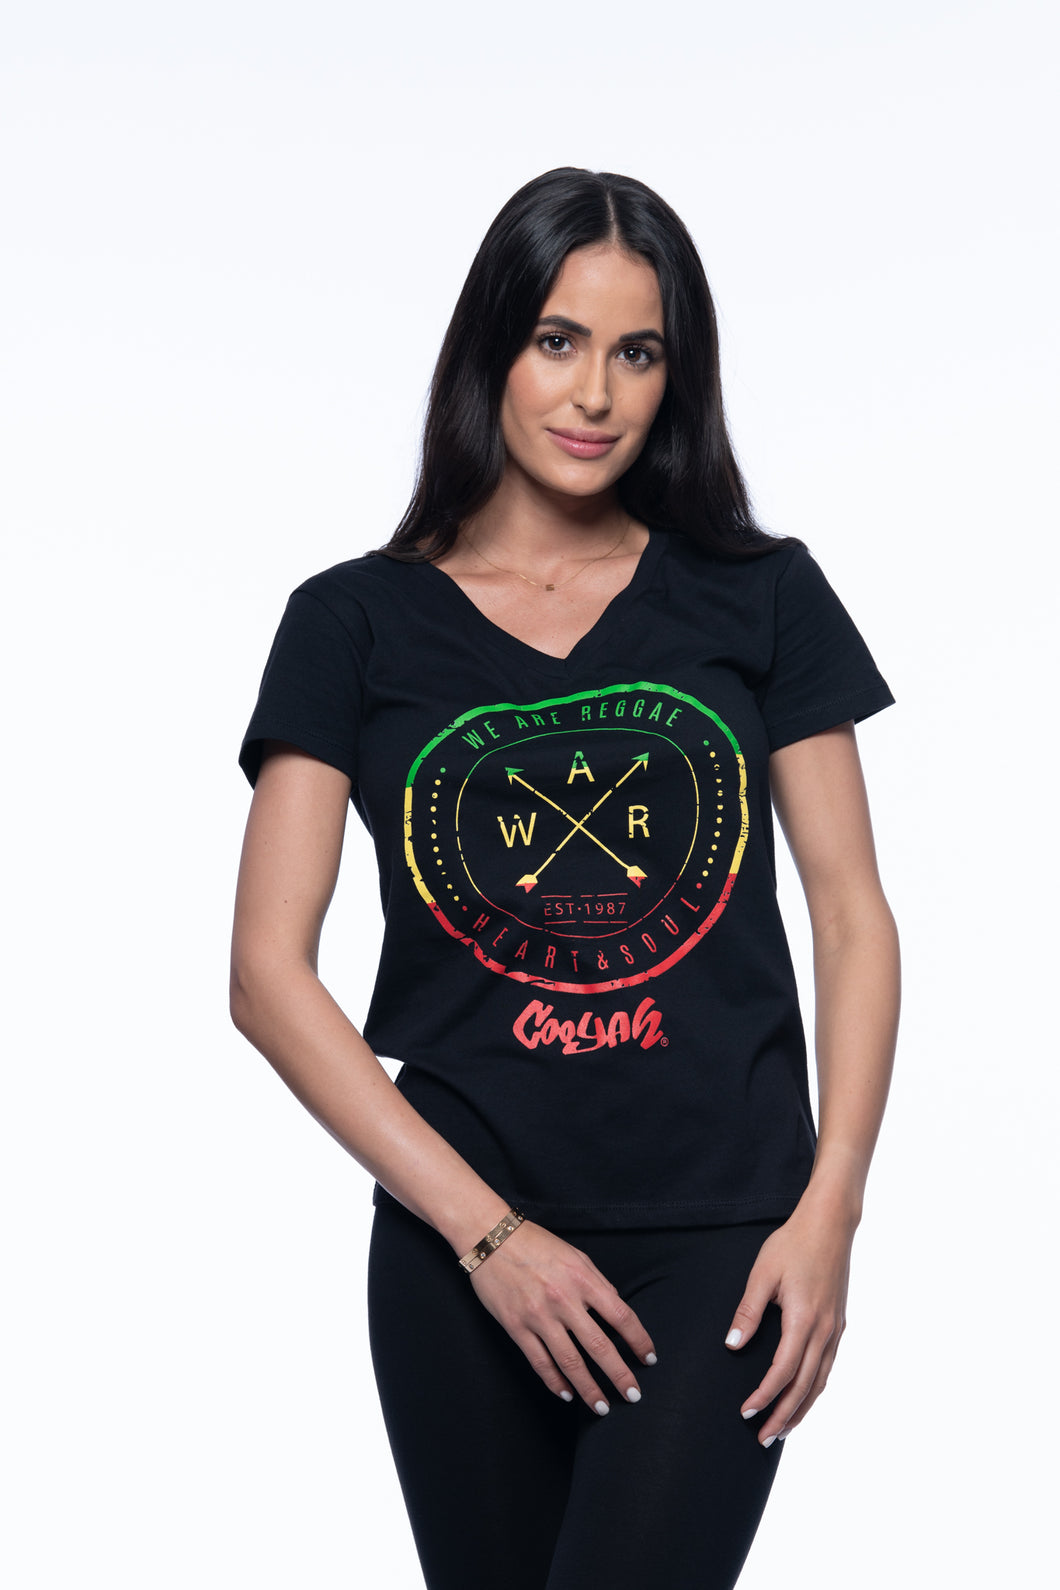 Women’s V-Neck T-Shirt We are Reggae WAR